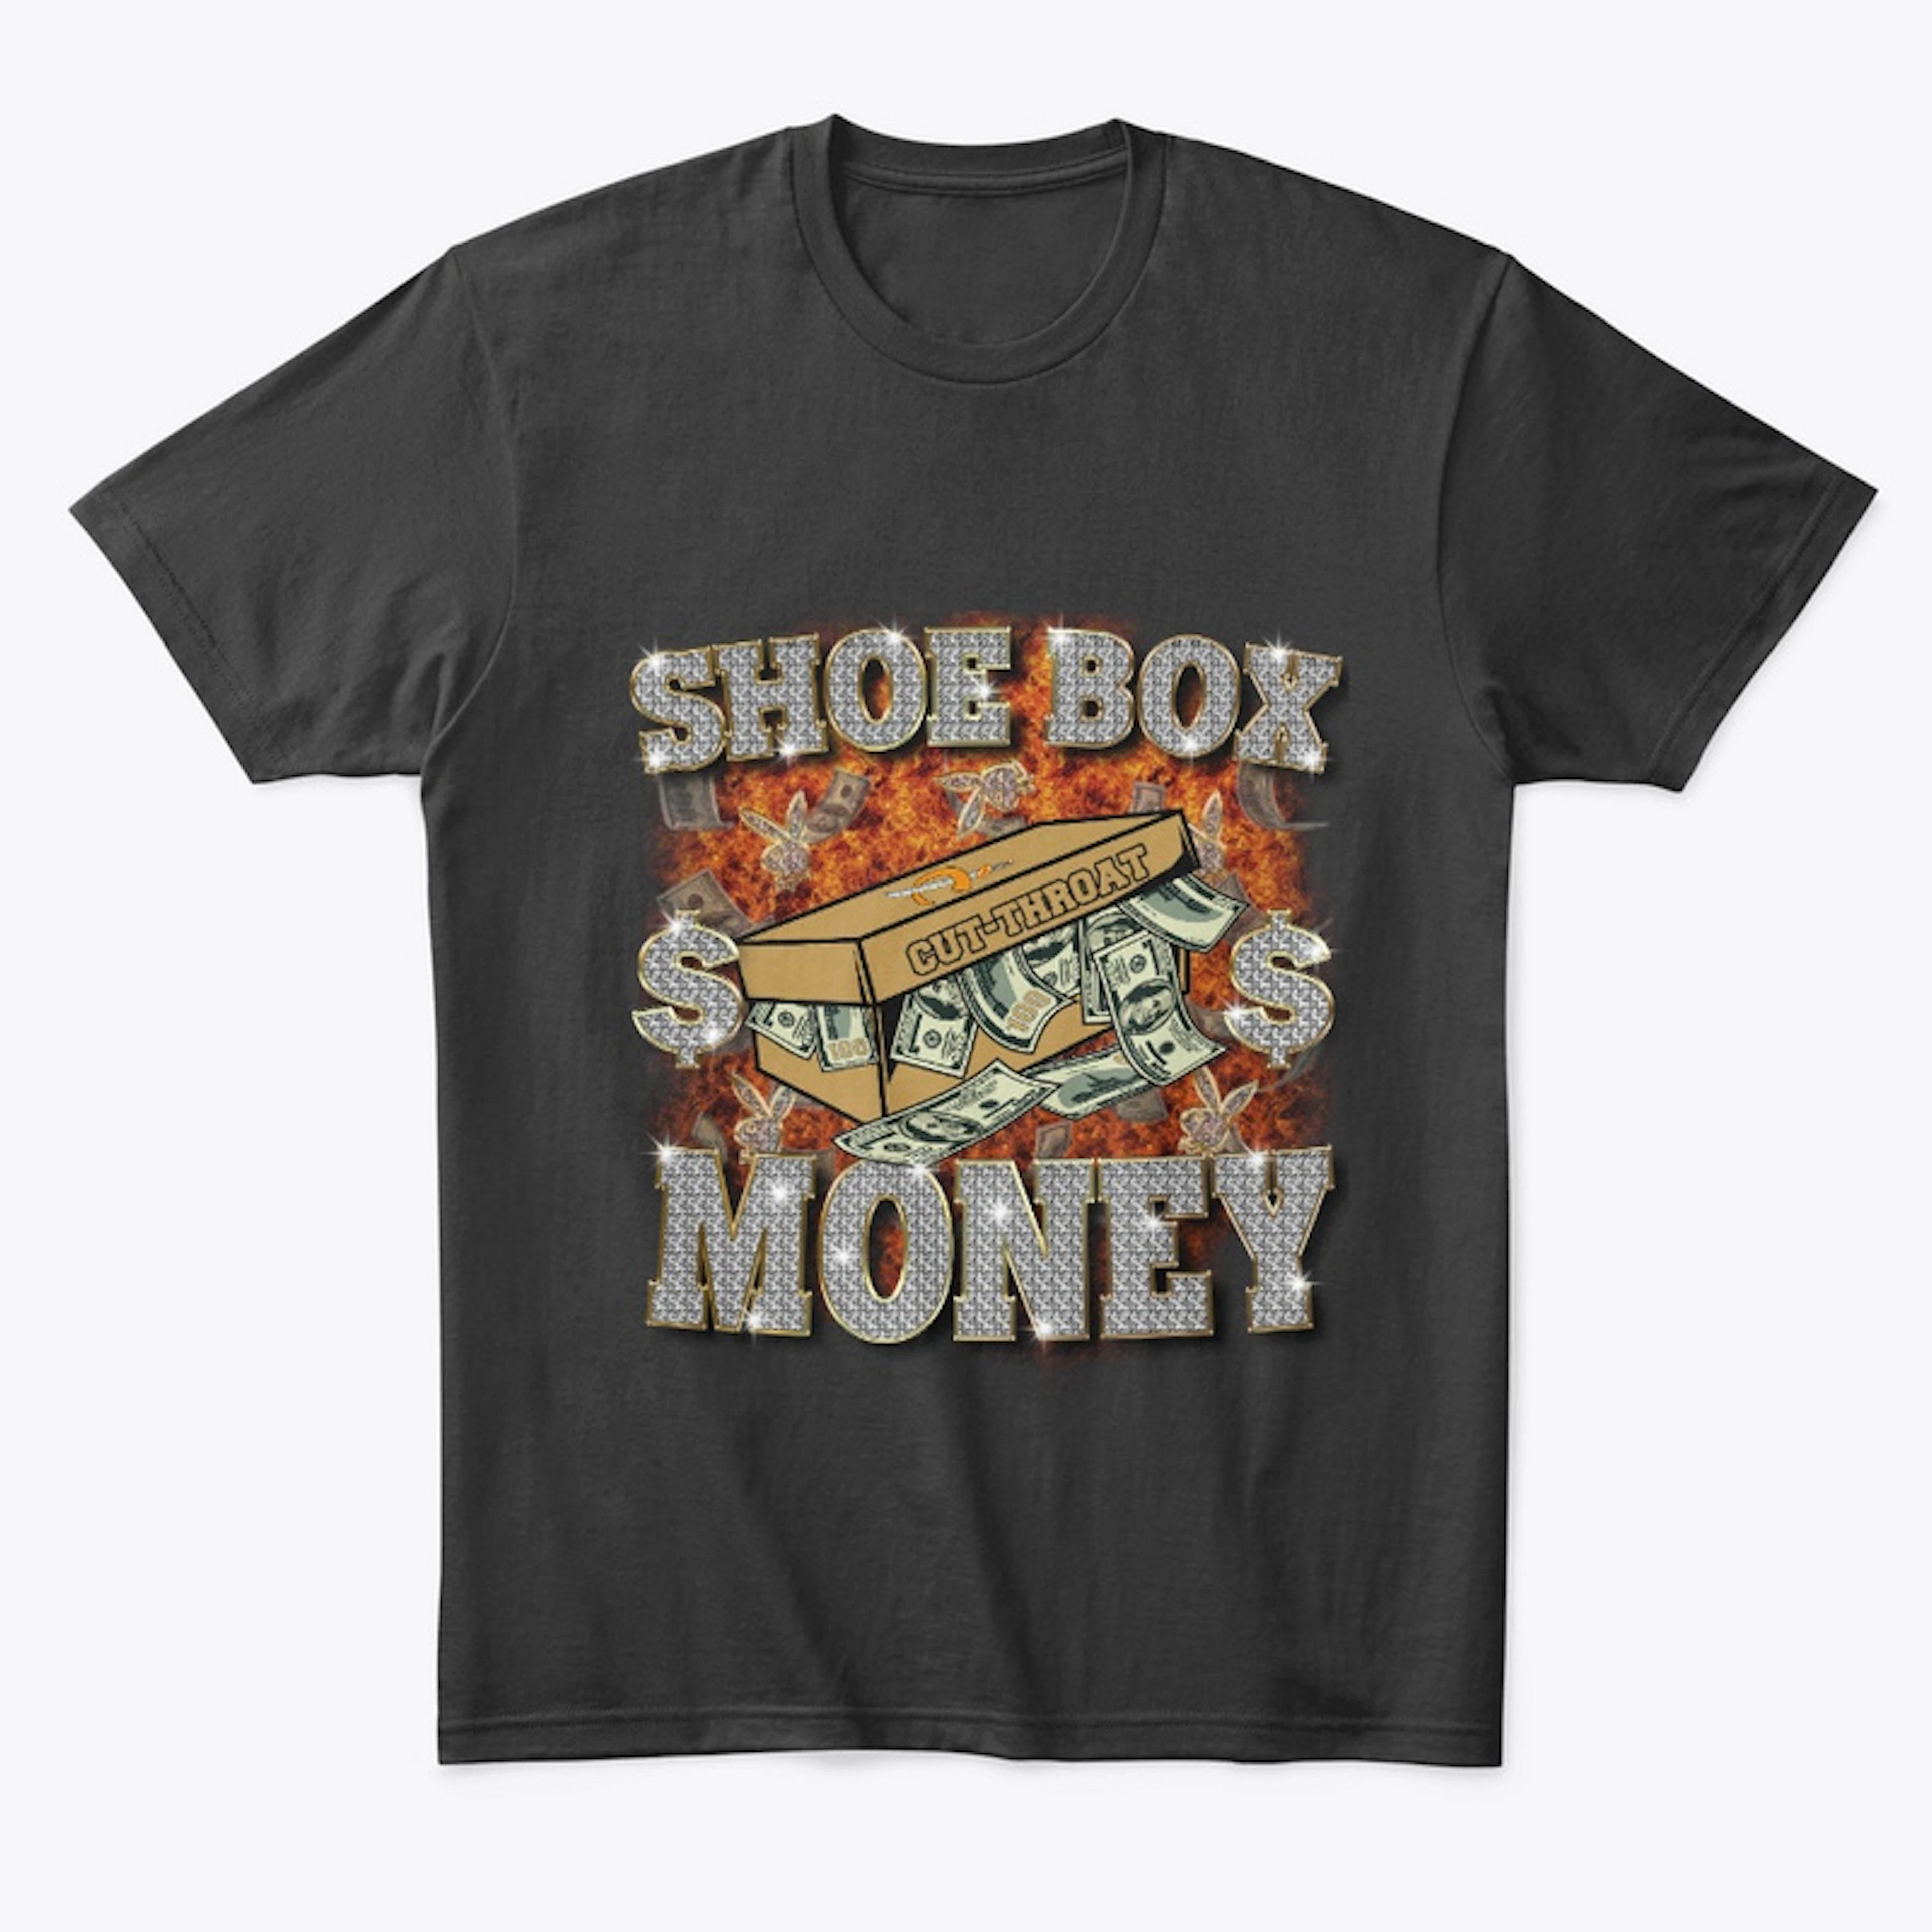 ShoeBox Money (Flames)